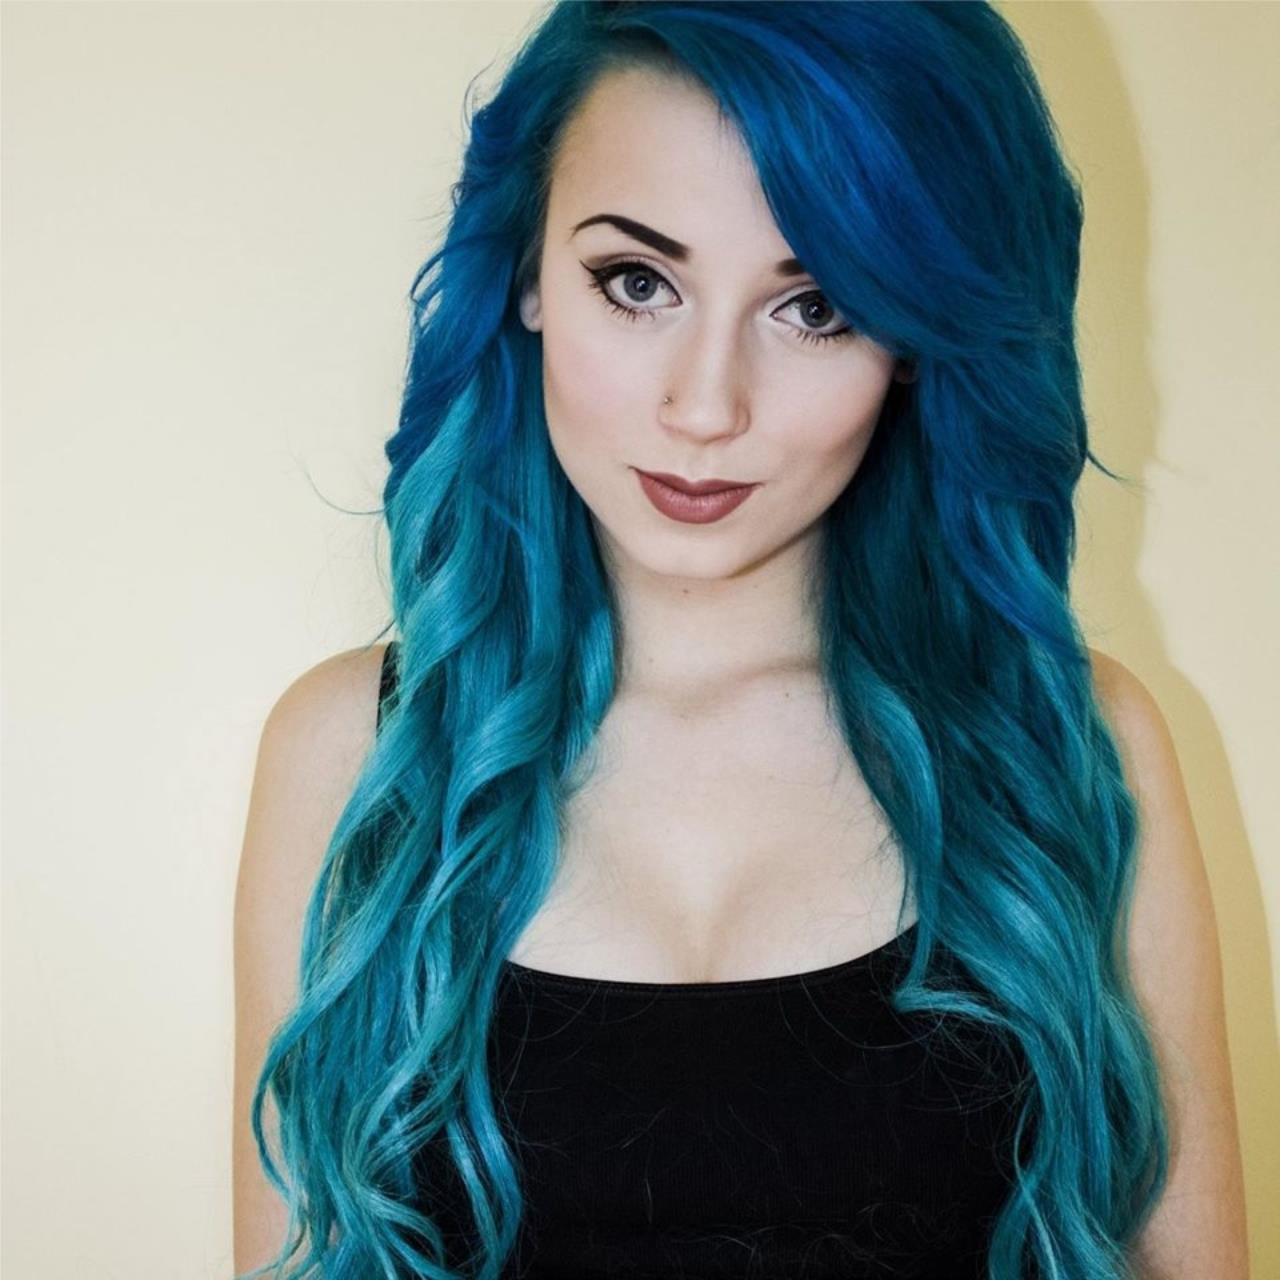 Синий цвет для волос гораздо популярнее, чем зелёные волосы, даже несмотря ...